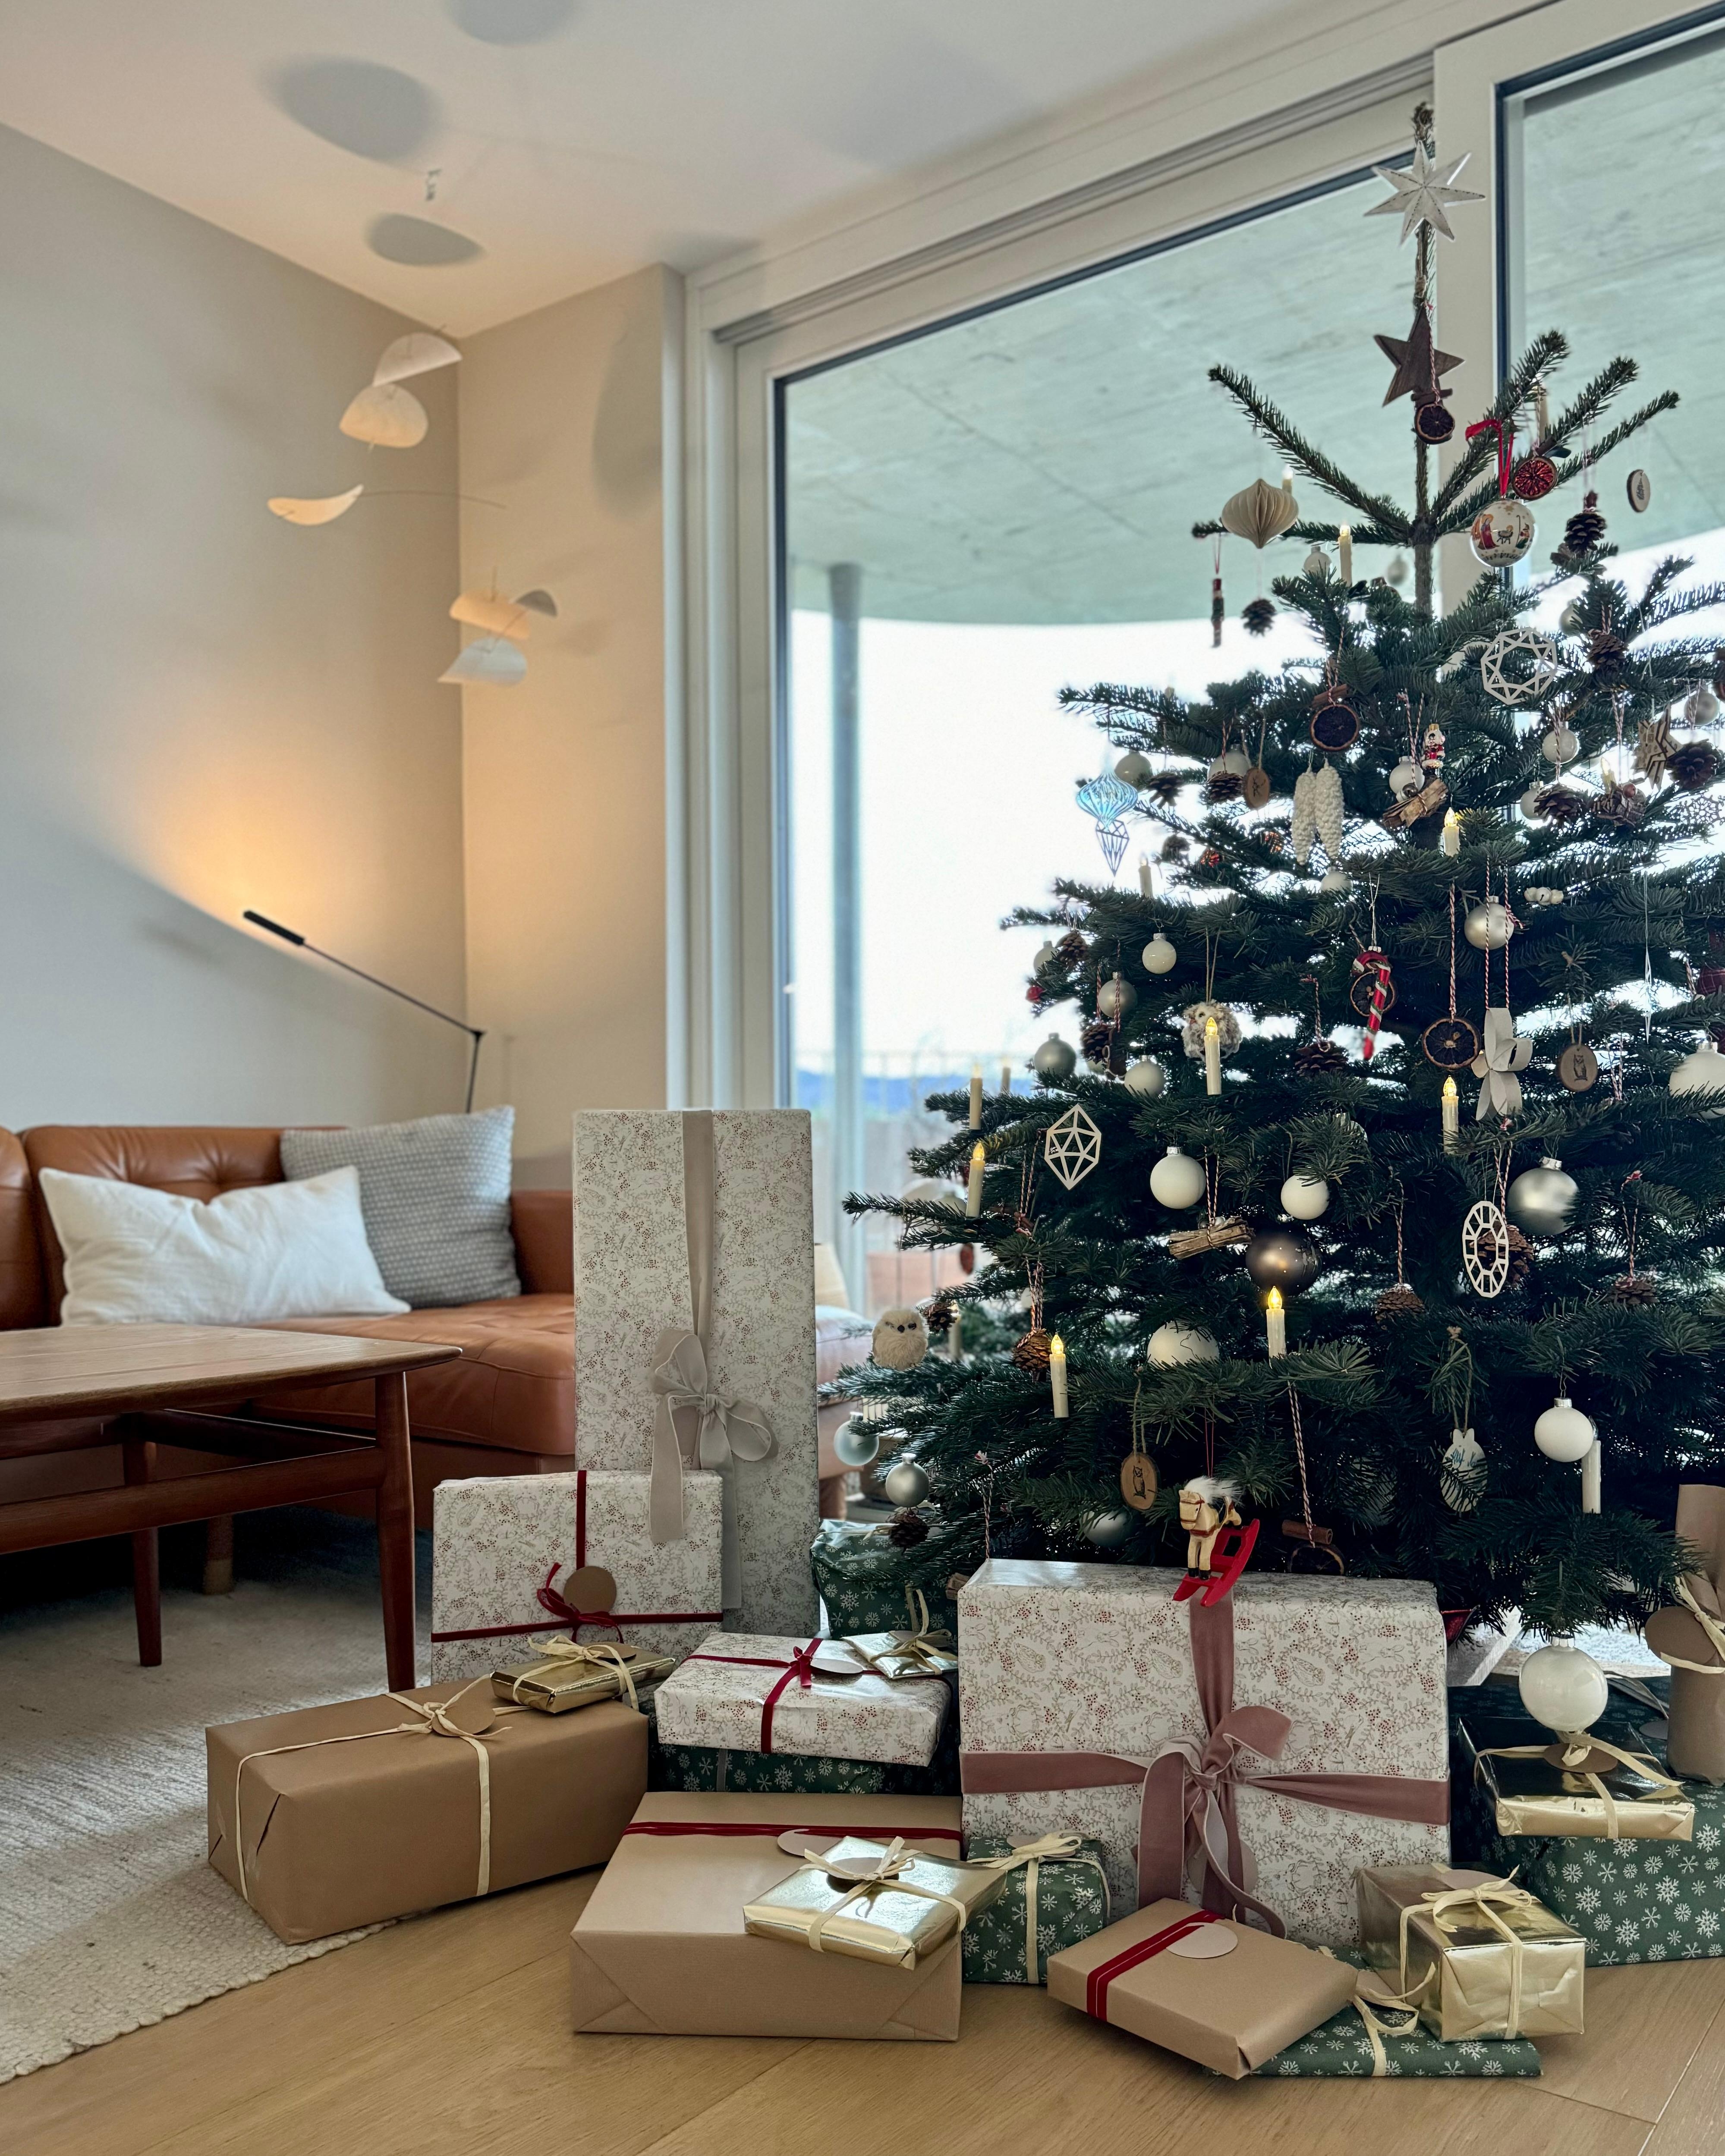 #weihnachten #christbaum #weihnachtsbaum #geschenke #wohnzimmer